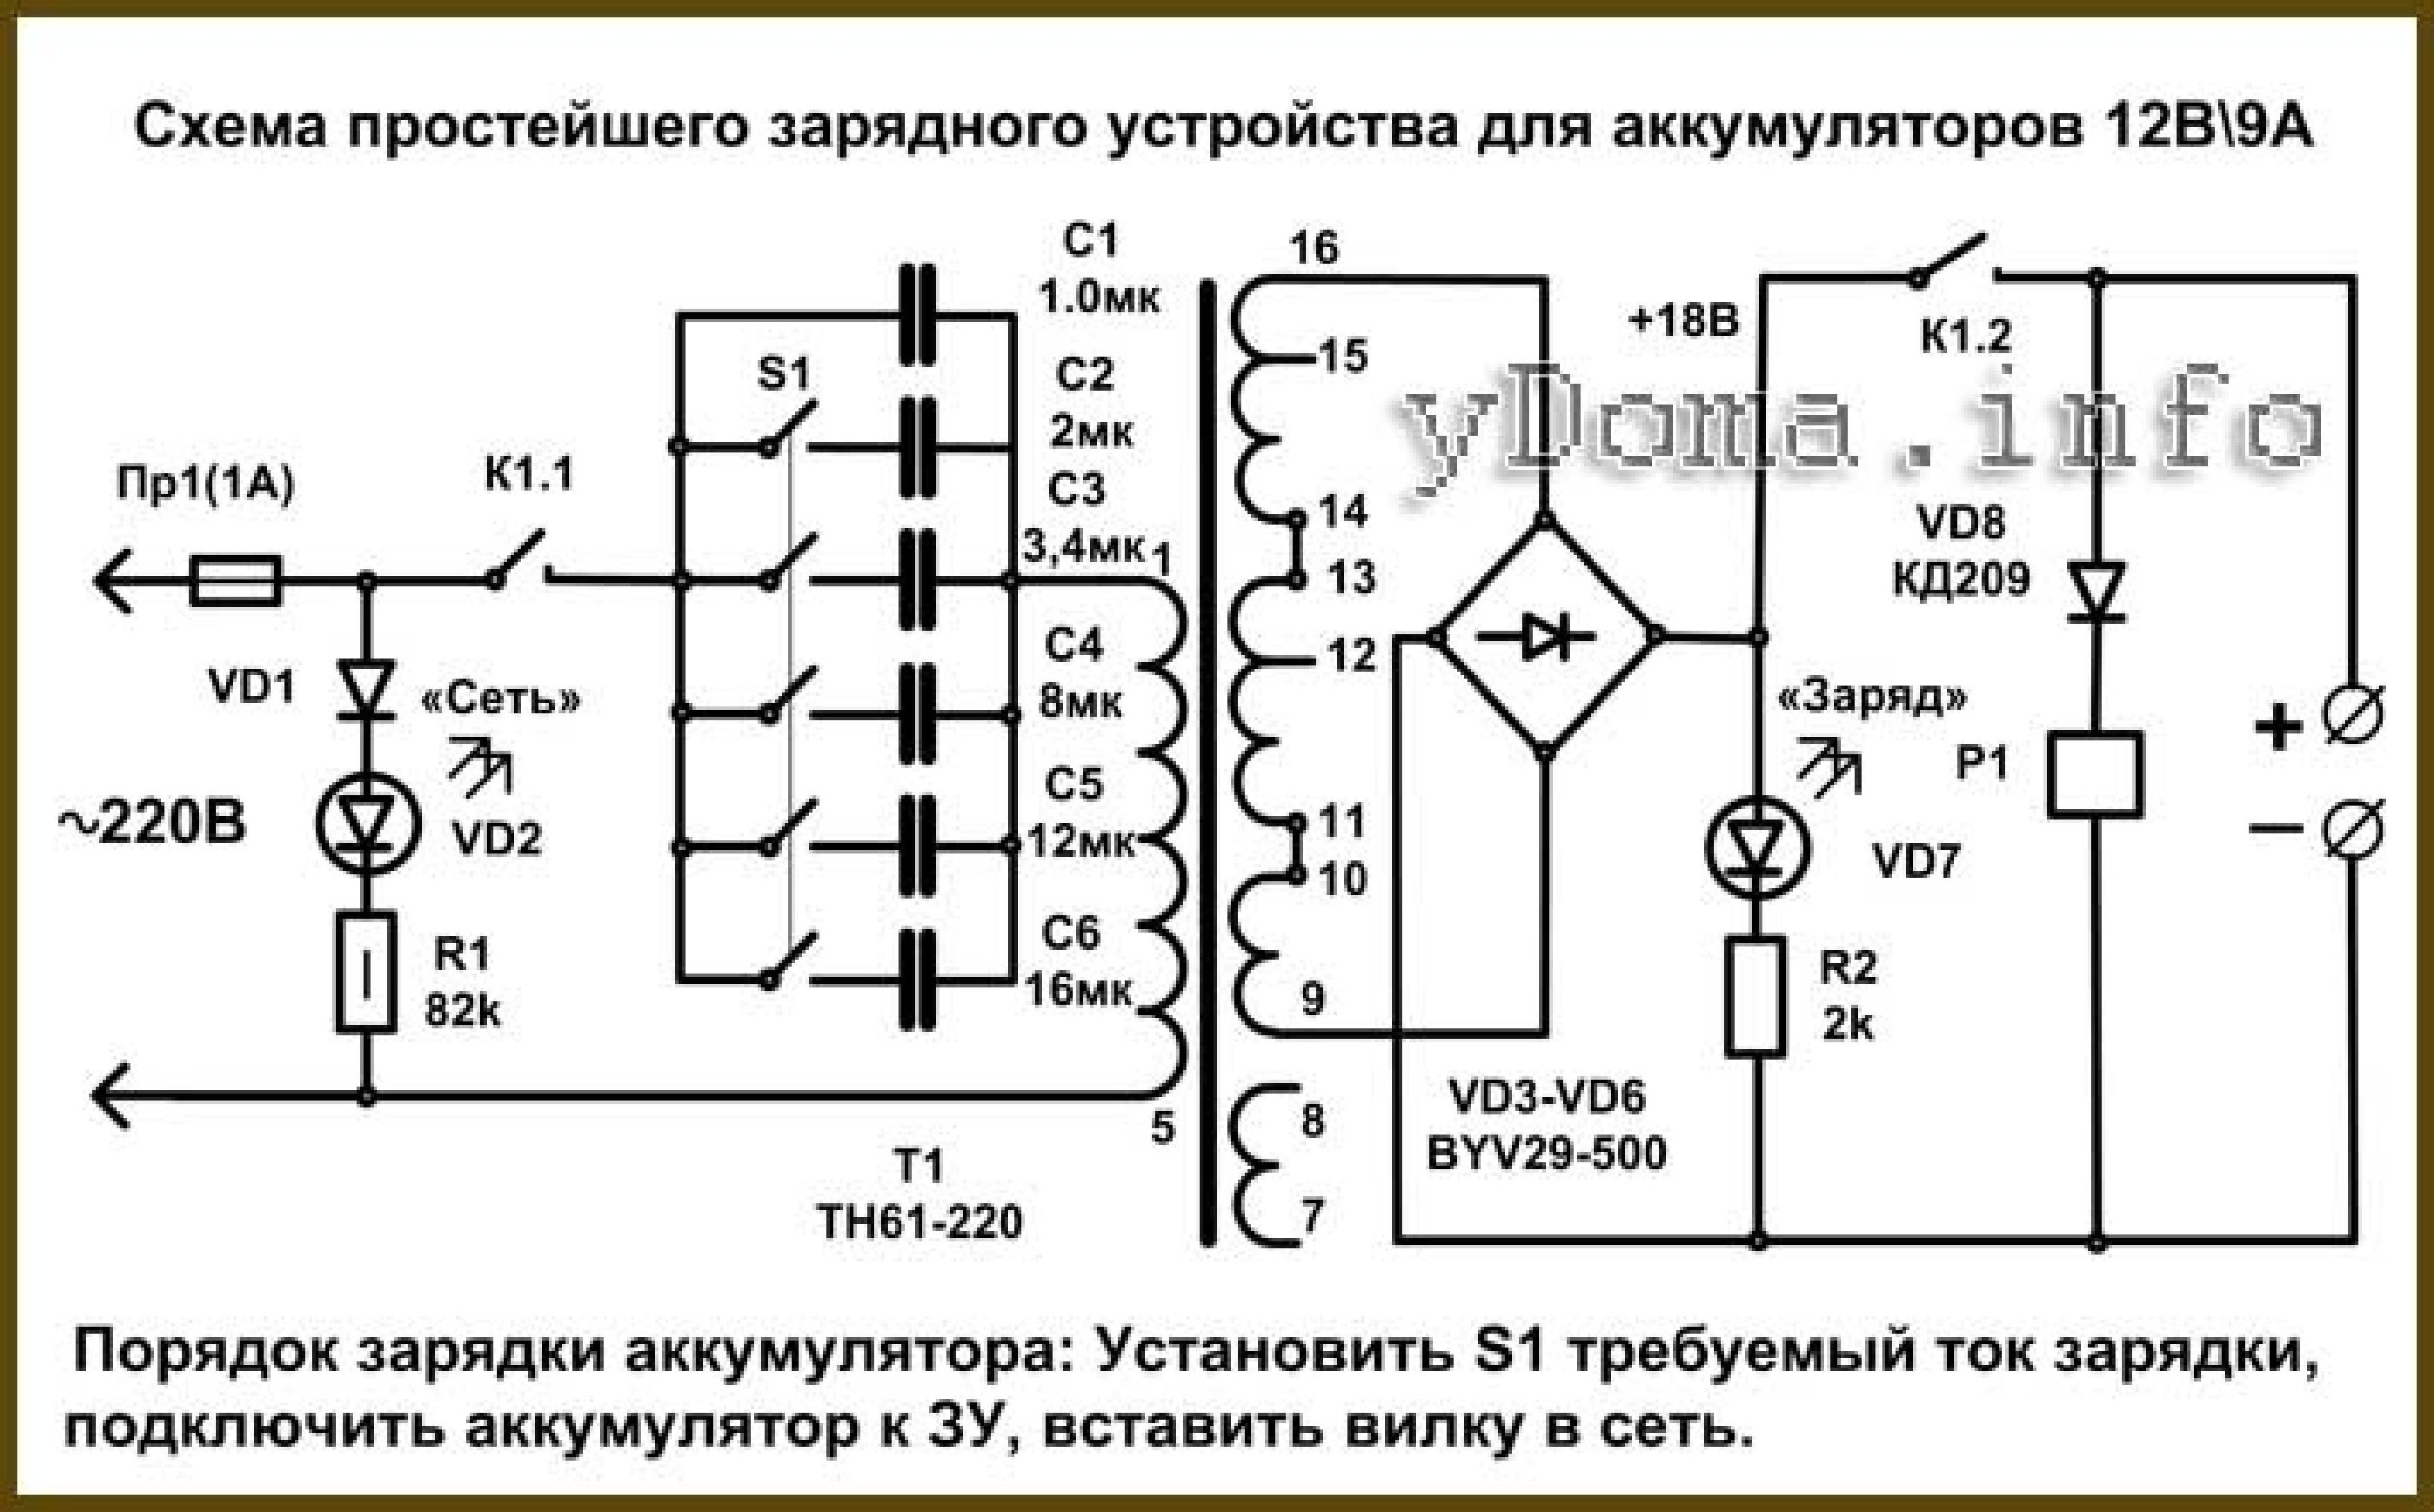 Пуско зарядное диагностическое устройство т1020 электрическая схема